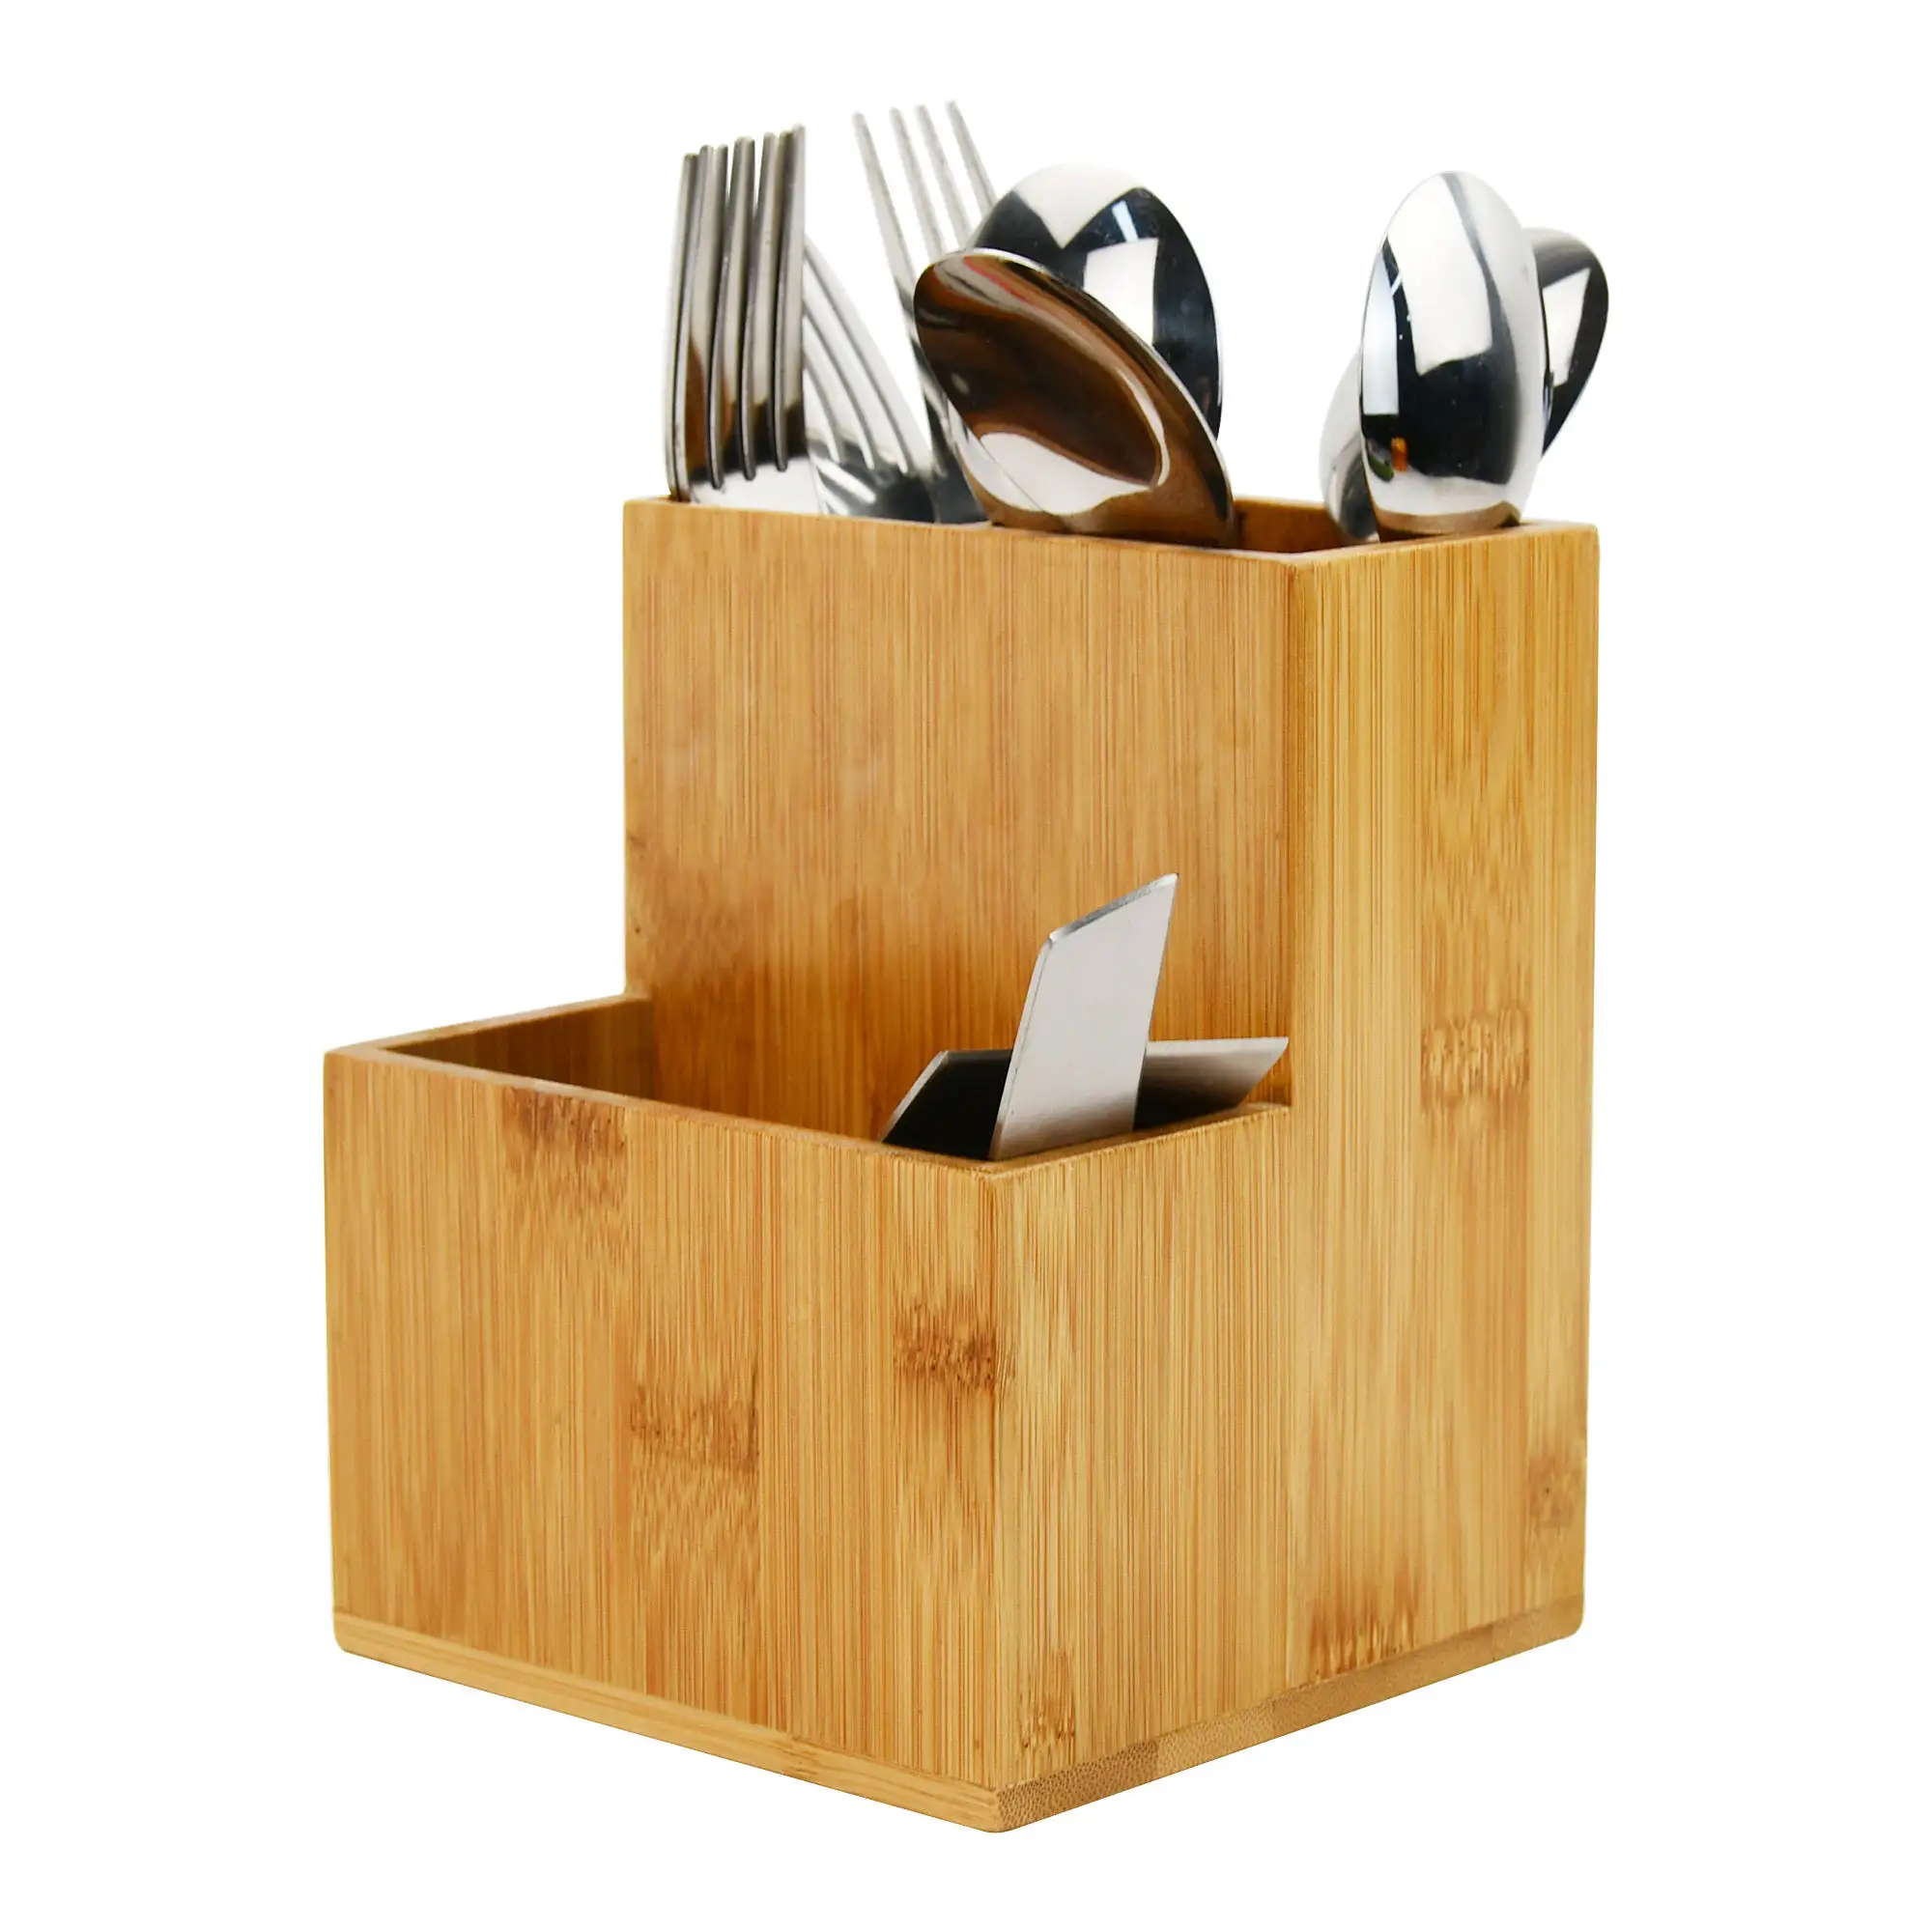 Suporte de utensílio de cozinha de bambu, suporte de utensílio grande de 2 camadas para bancada, caixa organizadora de armazenamento rústica para talheres garfo colher